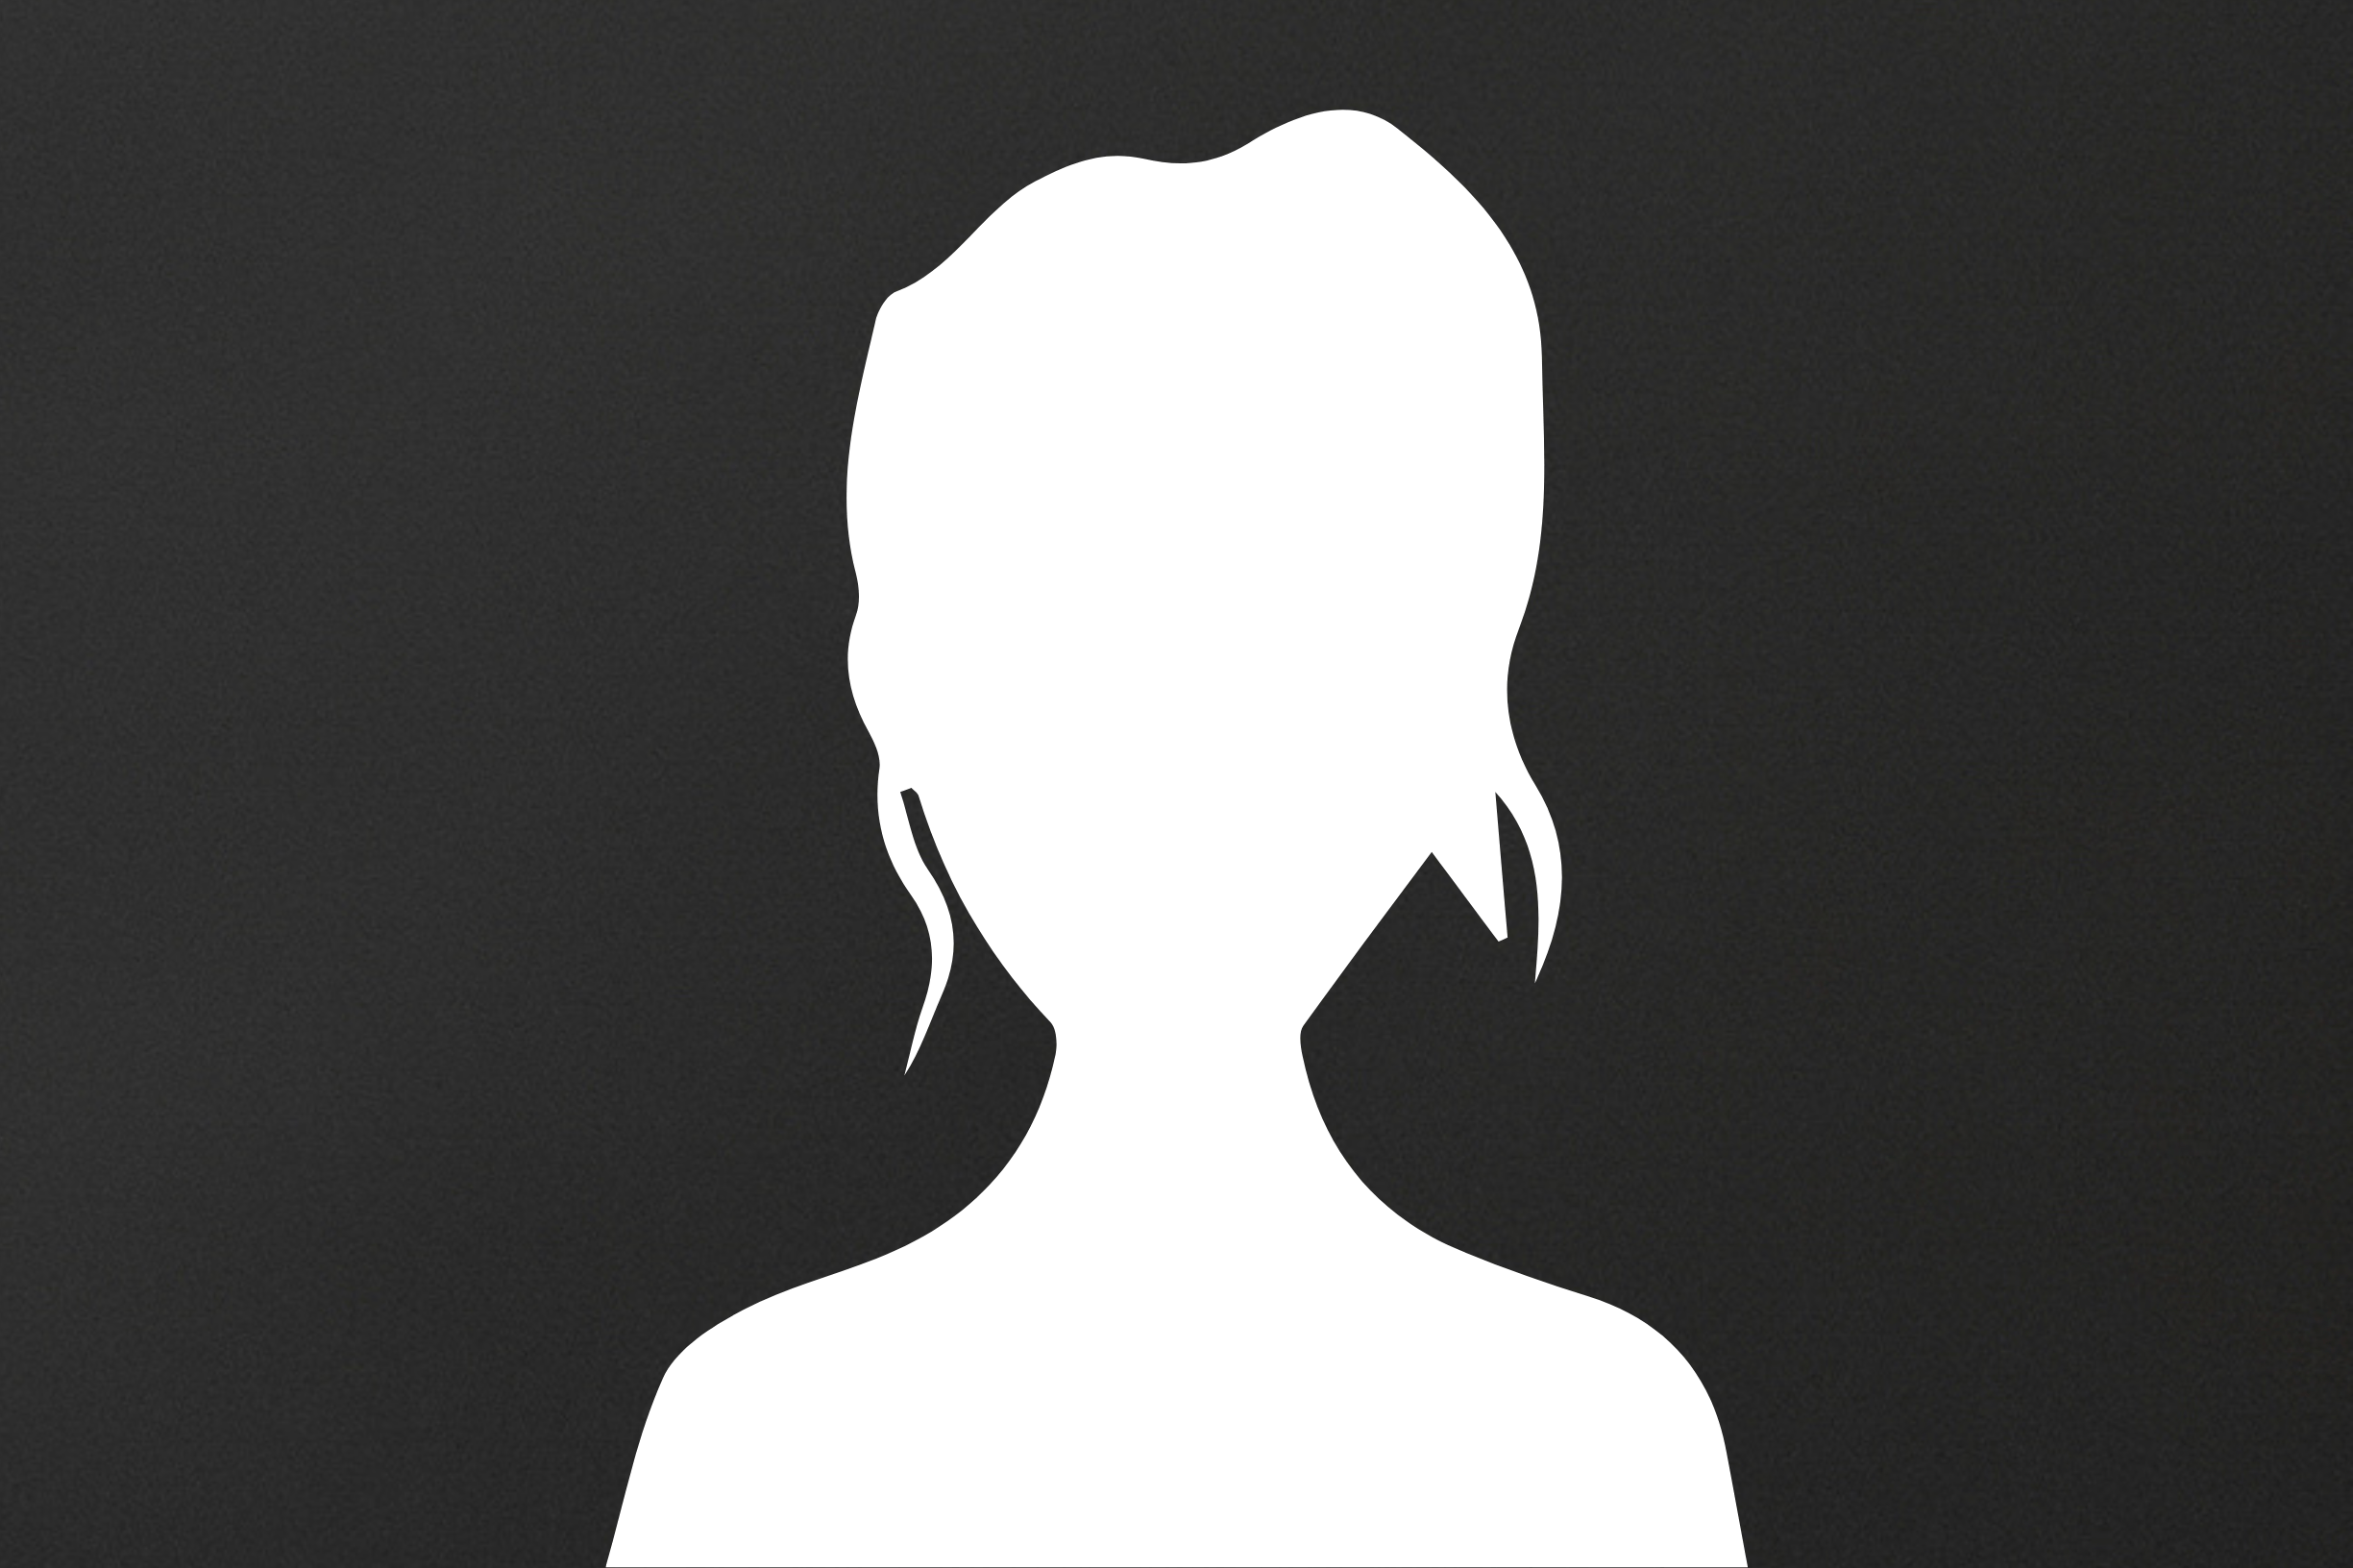 White female headshot icon on a grey background.